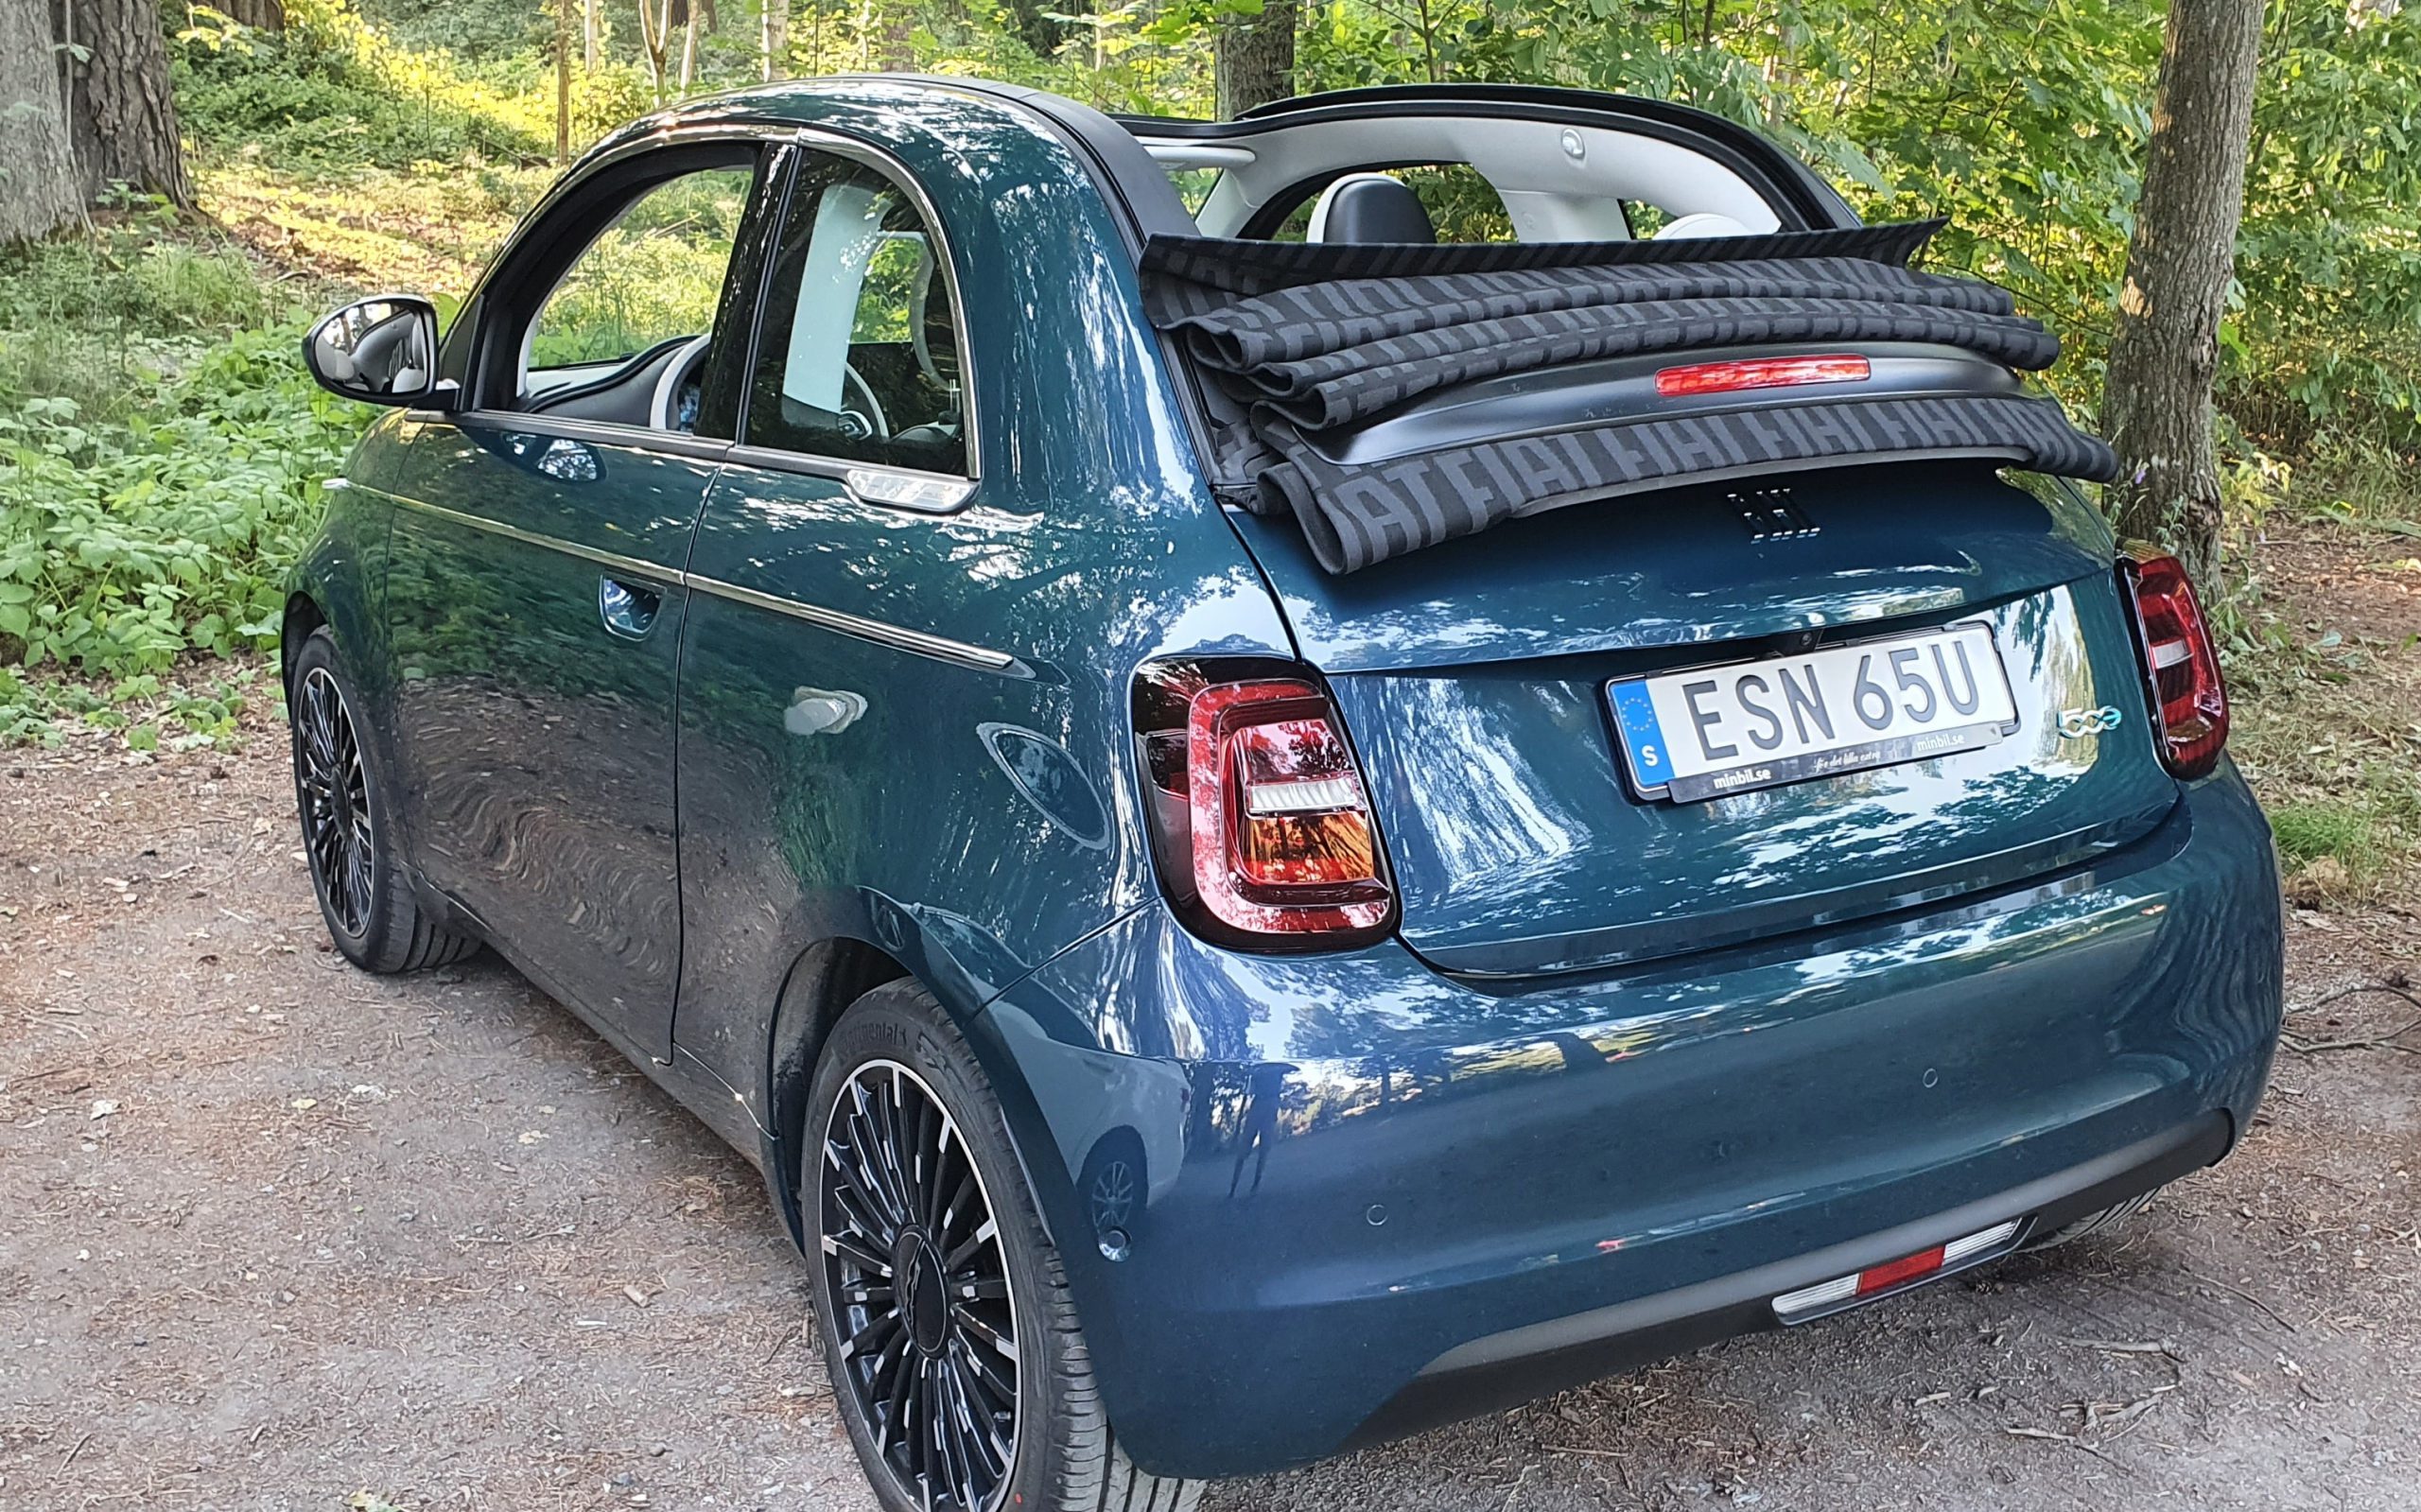 Fiat 500 mått, bagageutrymme och elektrifiering